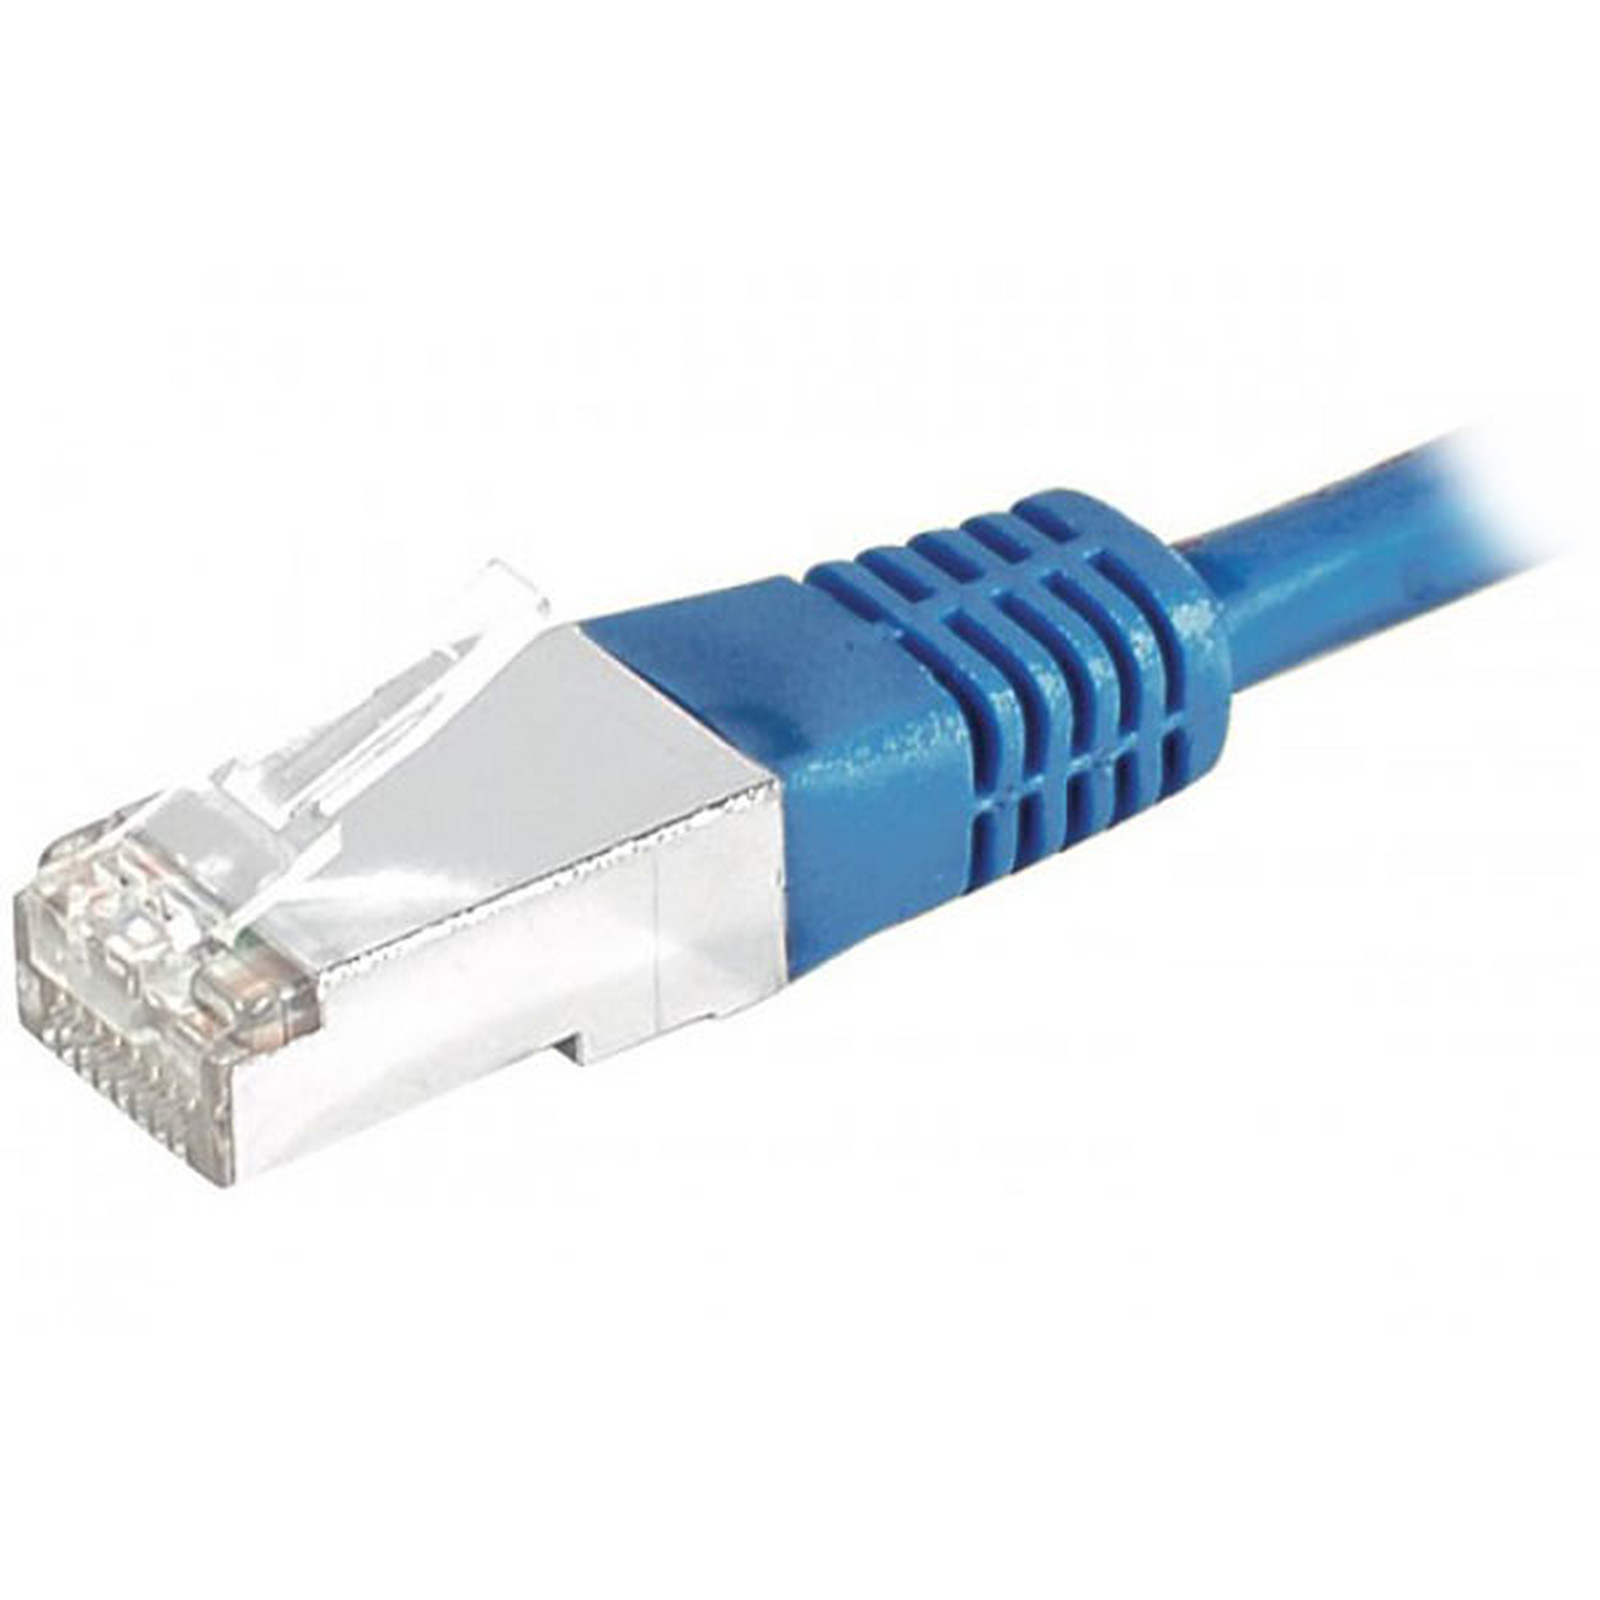 Cable RJ45 categorie 6 S/FTP 10 m (Bleu) - Cable RJ45 Generique